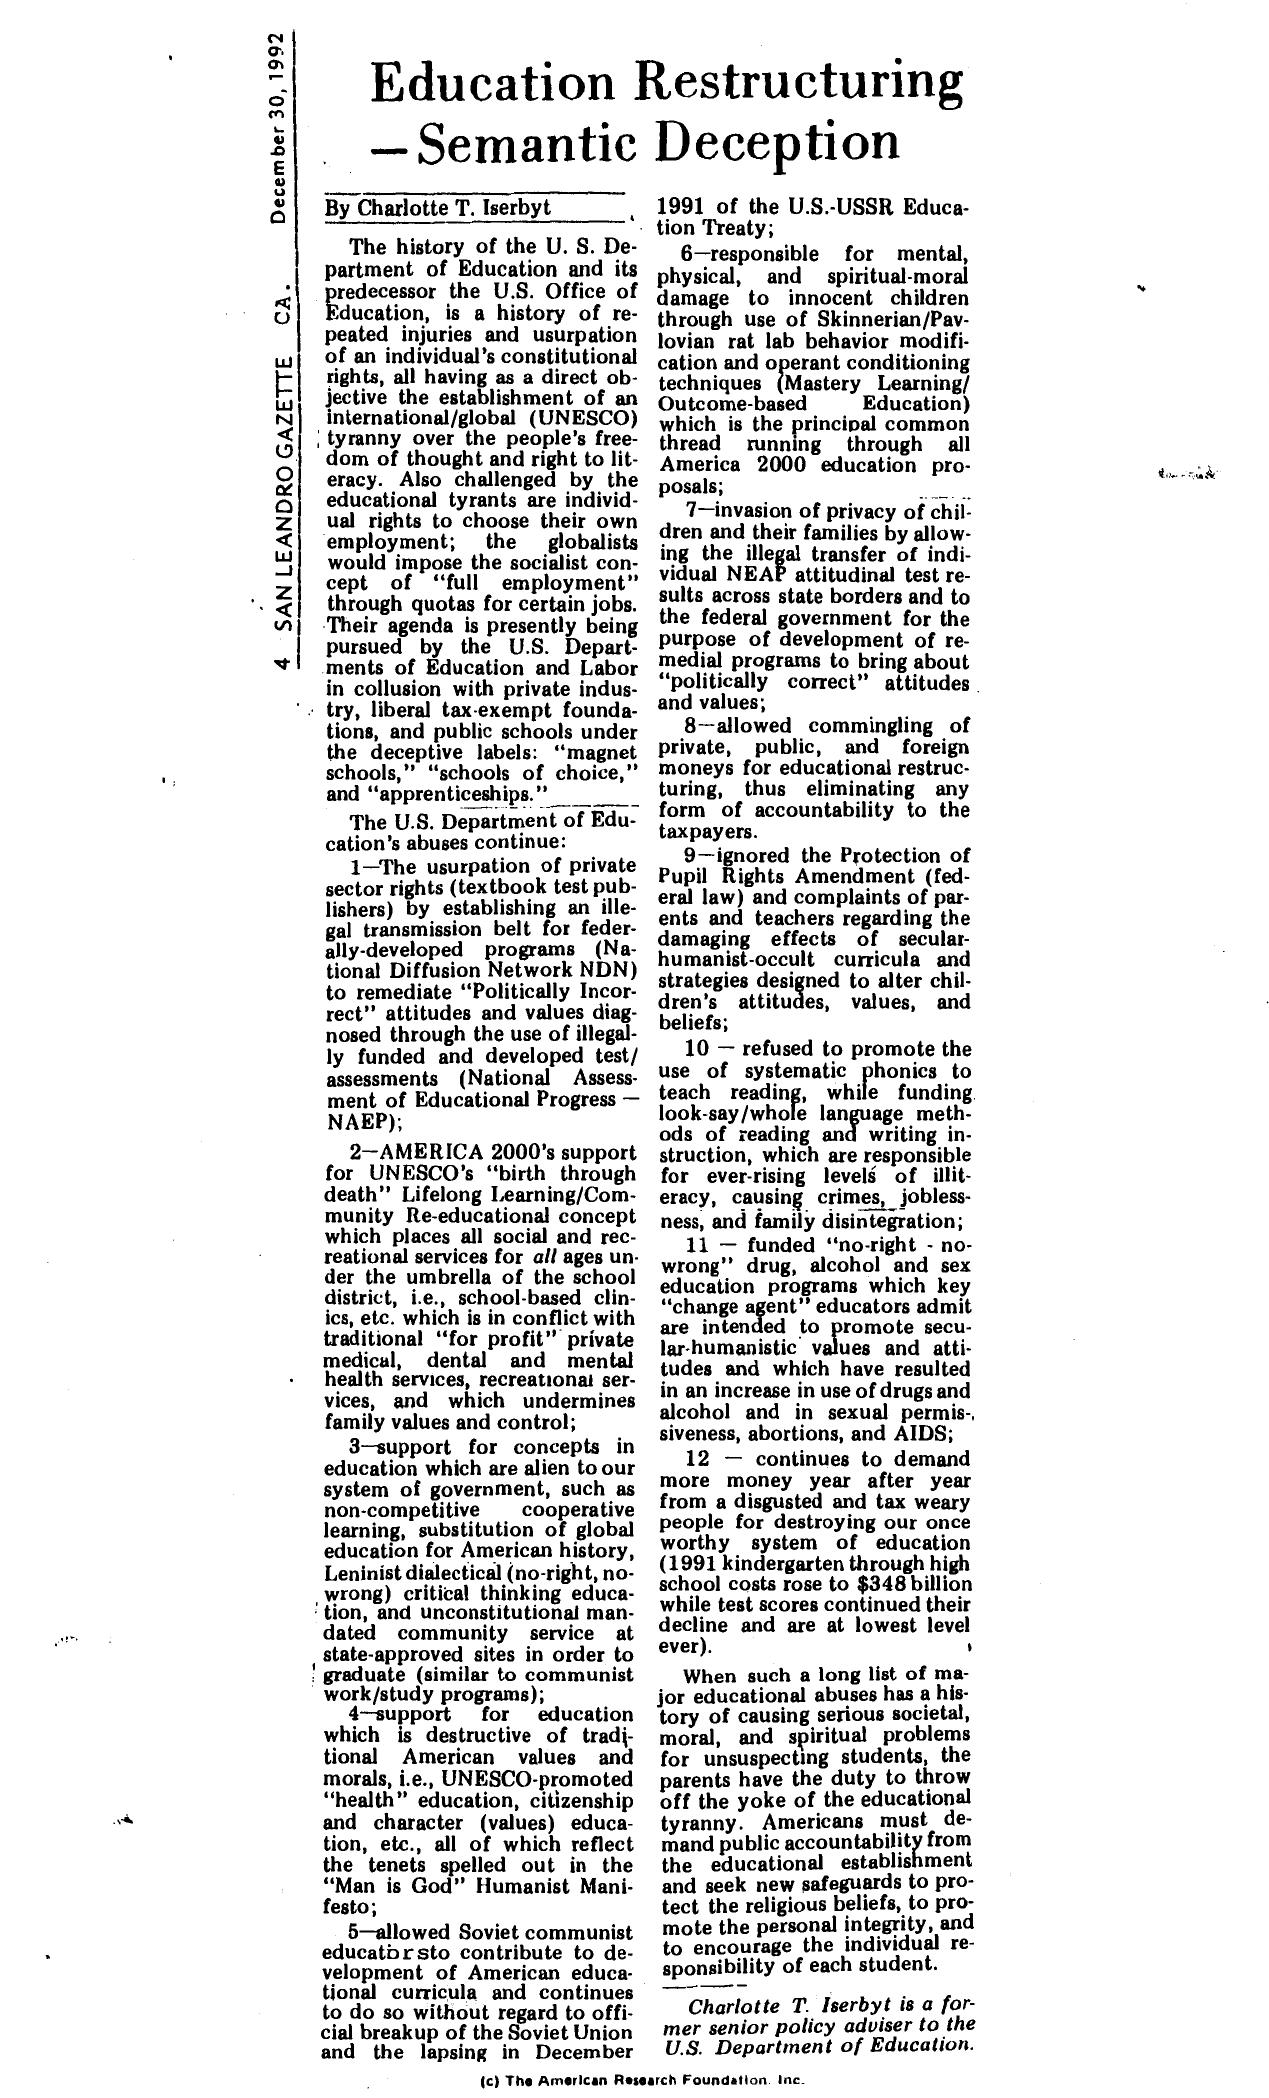 Education Restructuring - Semantic Deception - Iserbyt - San Leandro Gazette - 1992 - 2pgs